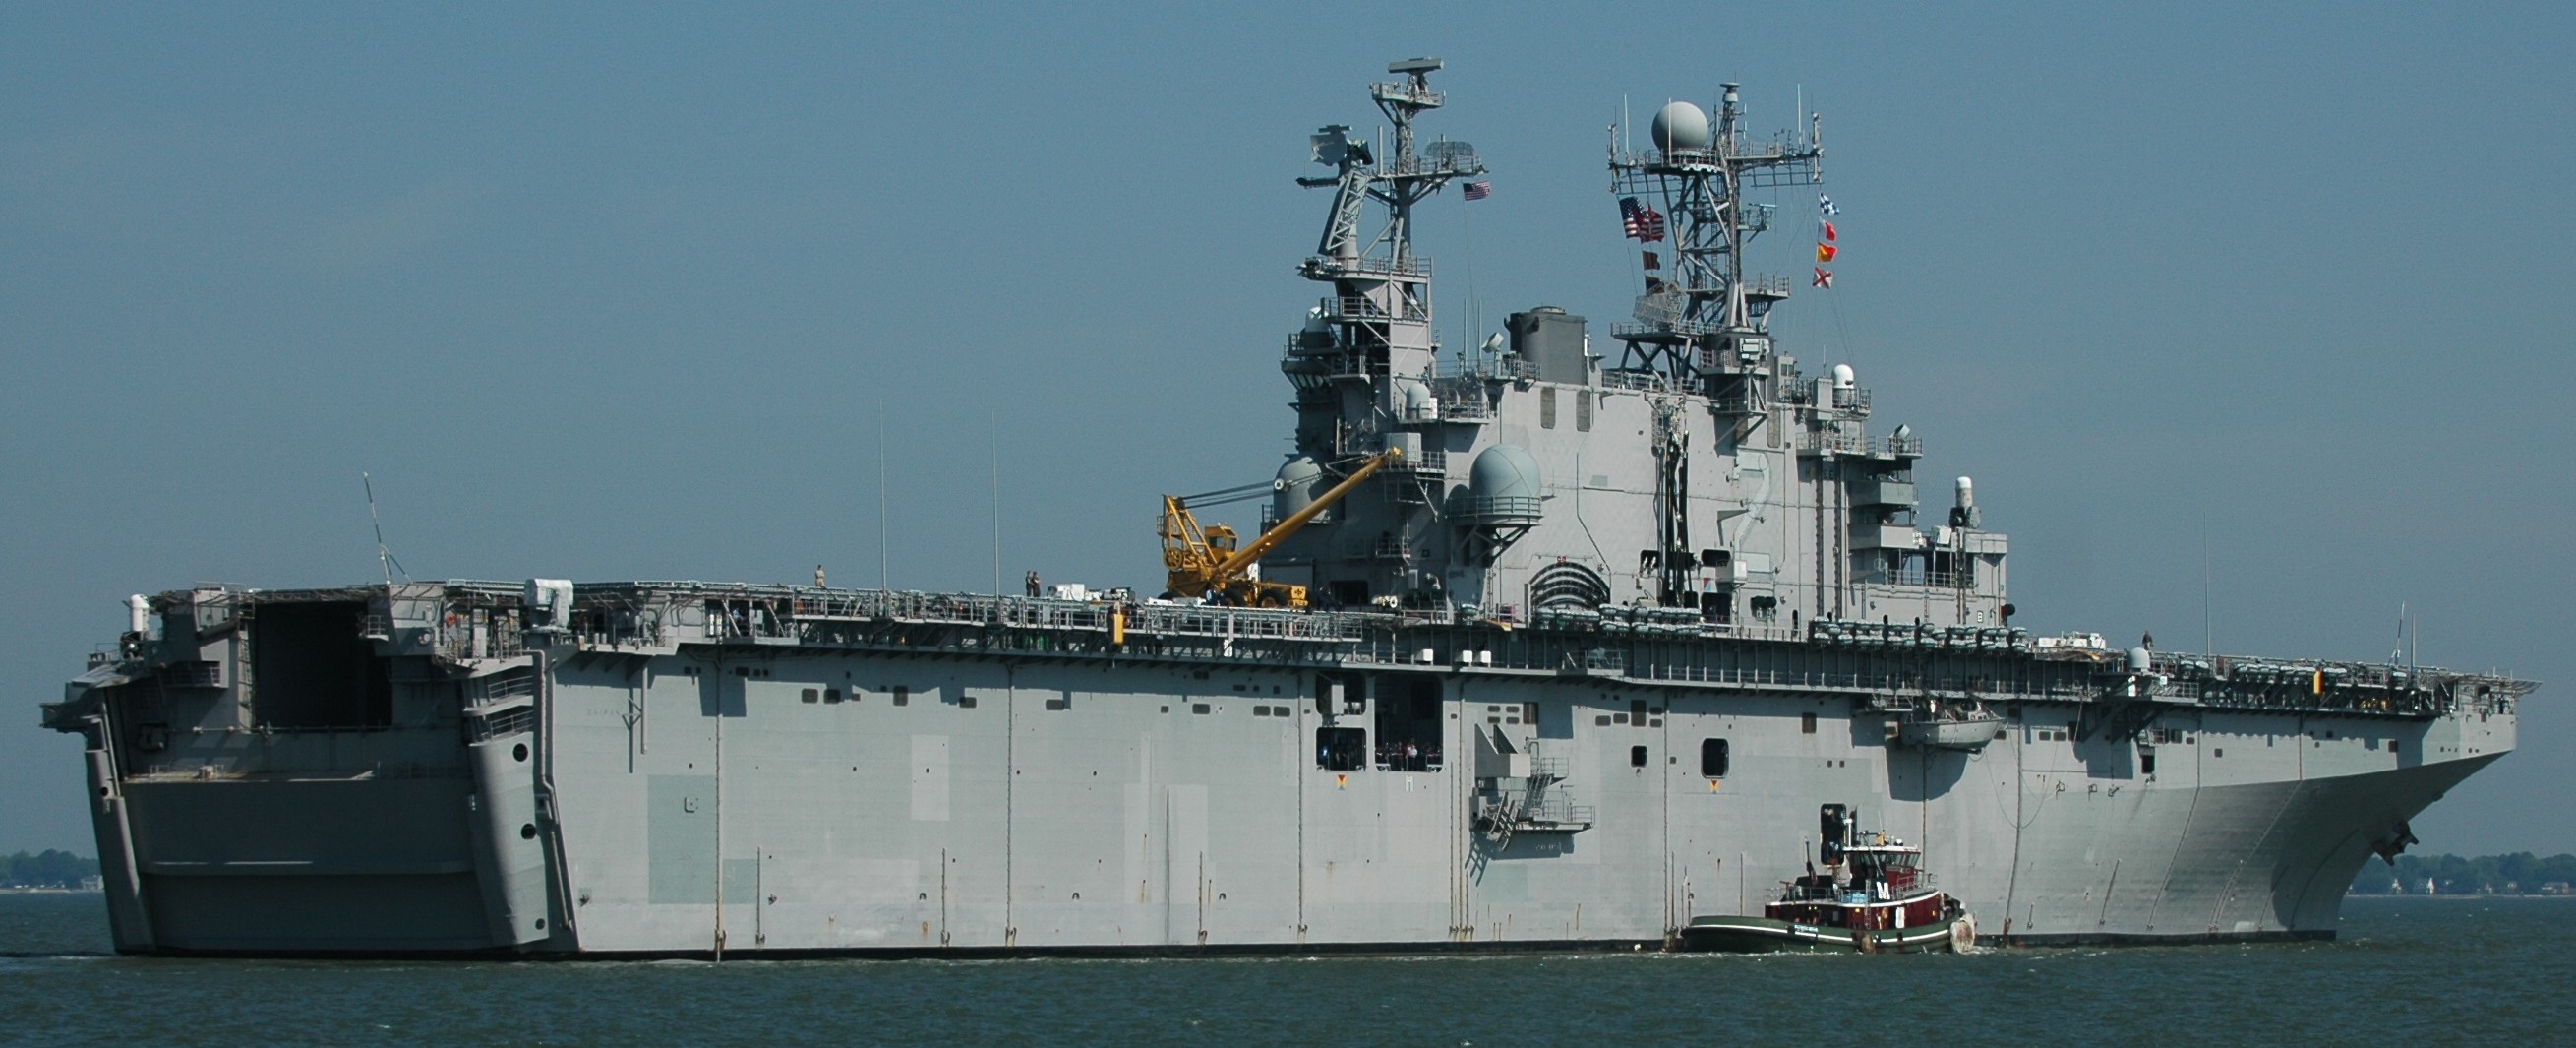 lha-2 uss saipan tarawa class amphibious assault ship us navy 23